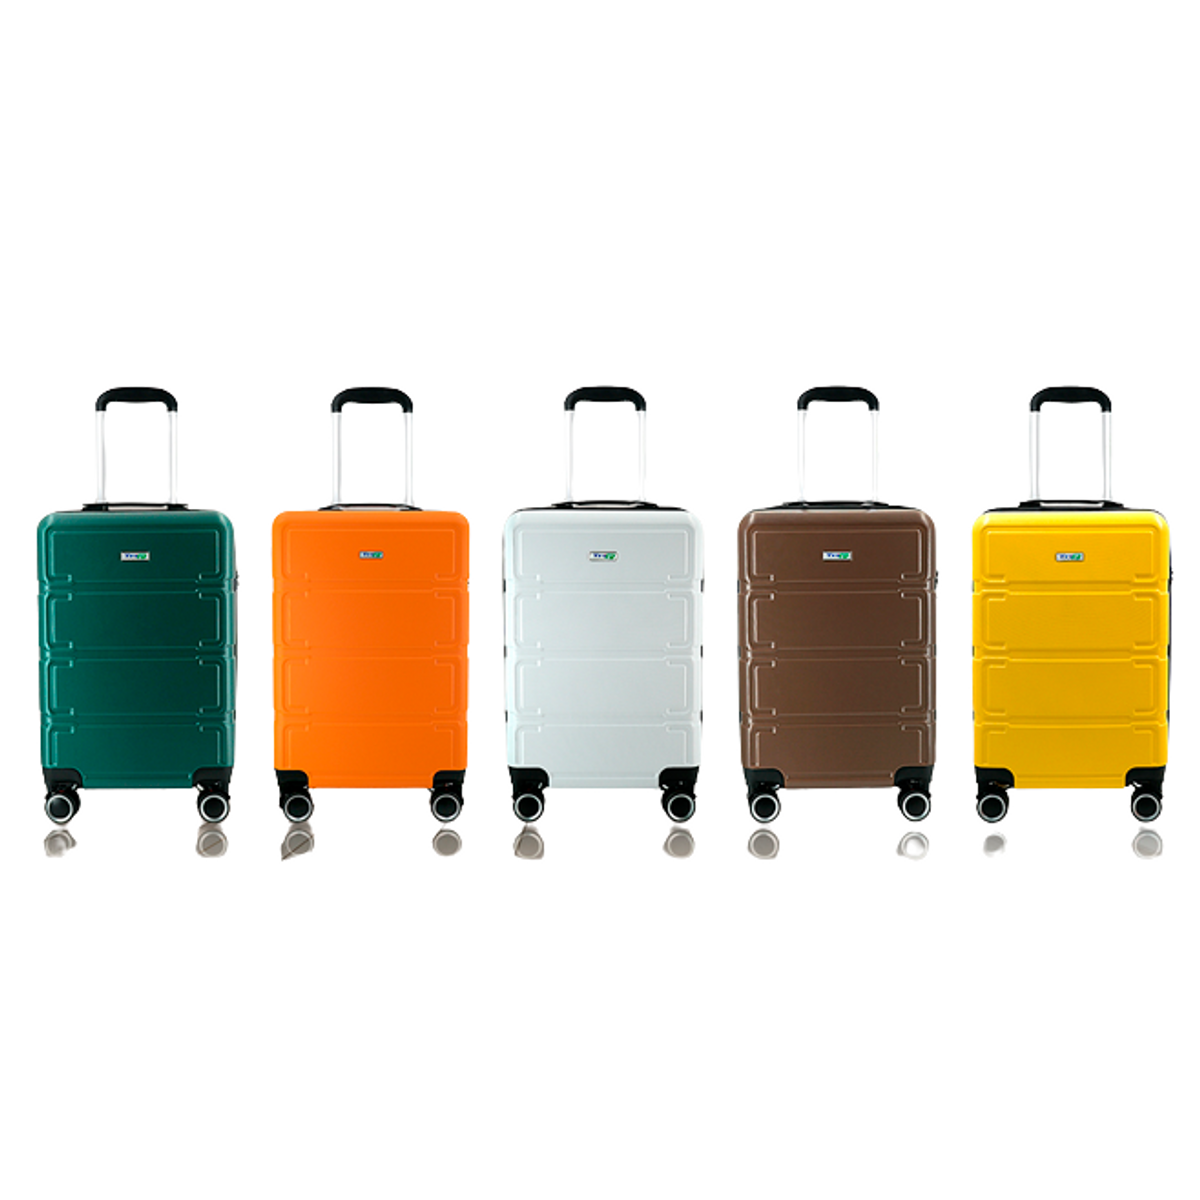 vali nhựa trip p806 size 24 inch, có khóa bảo mật, bảo hành 5 năm - freeship 1